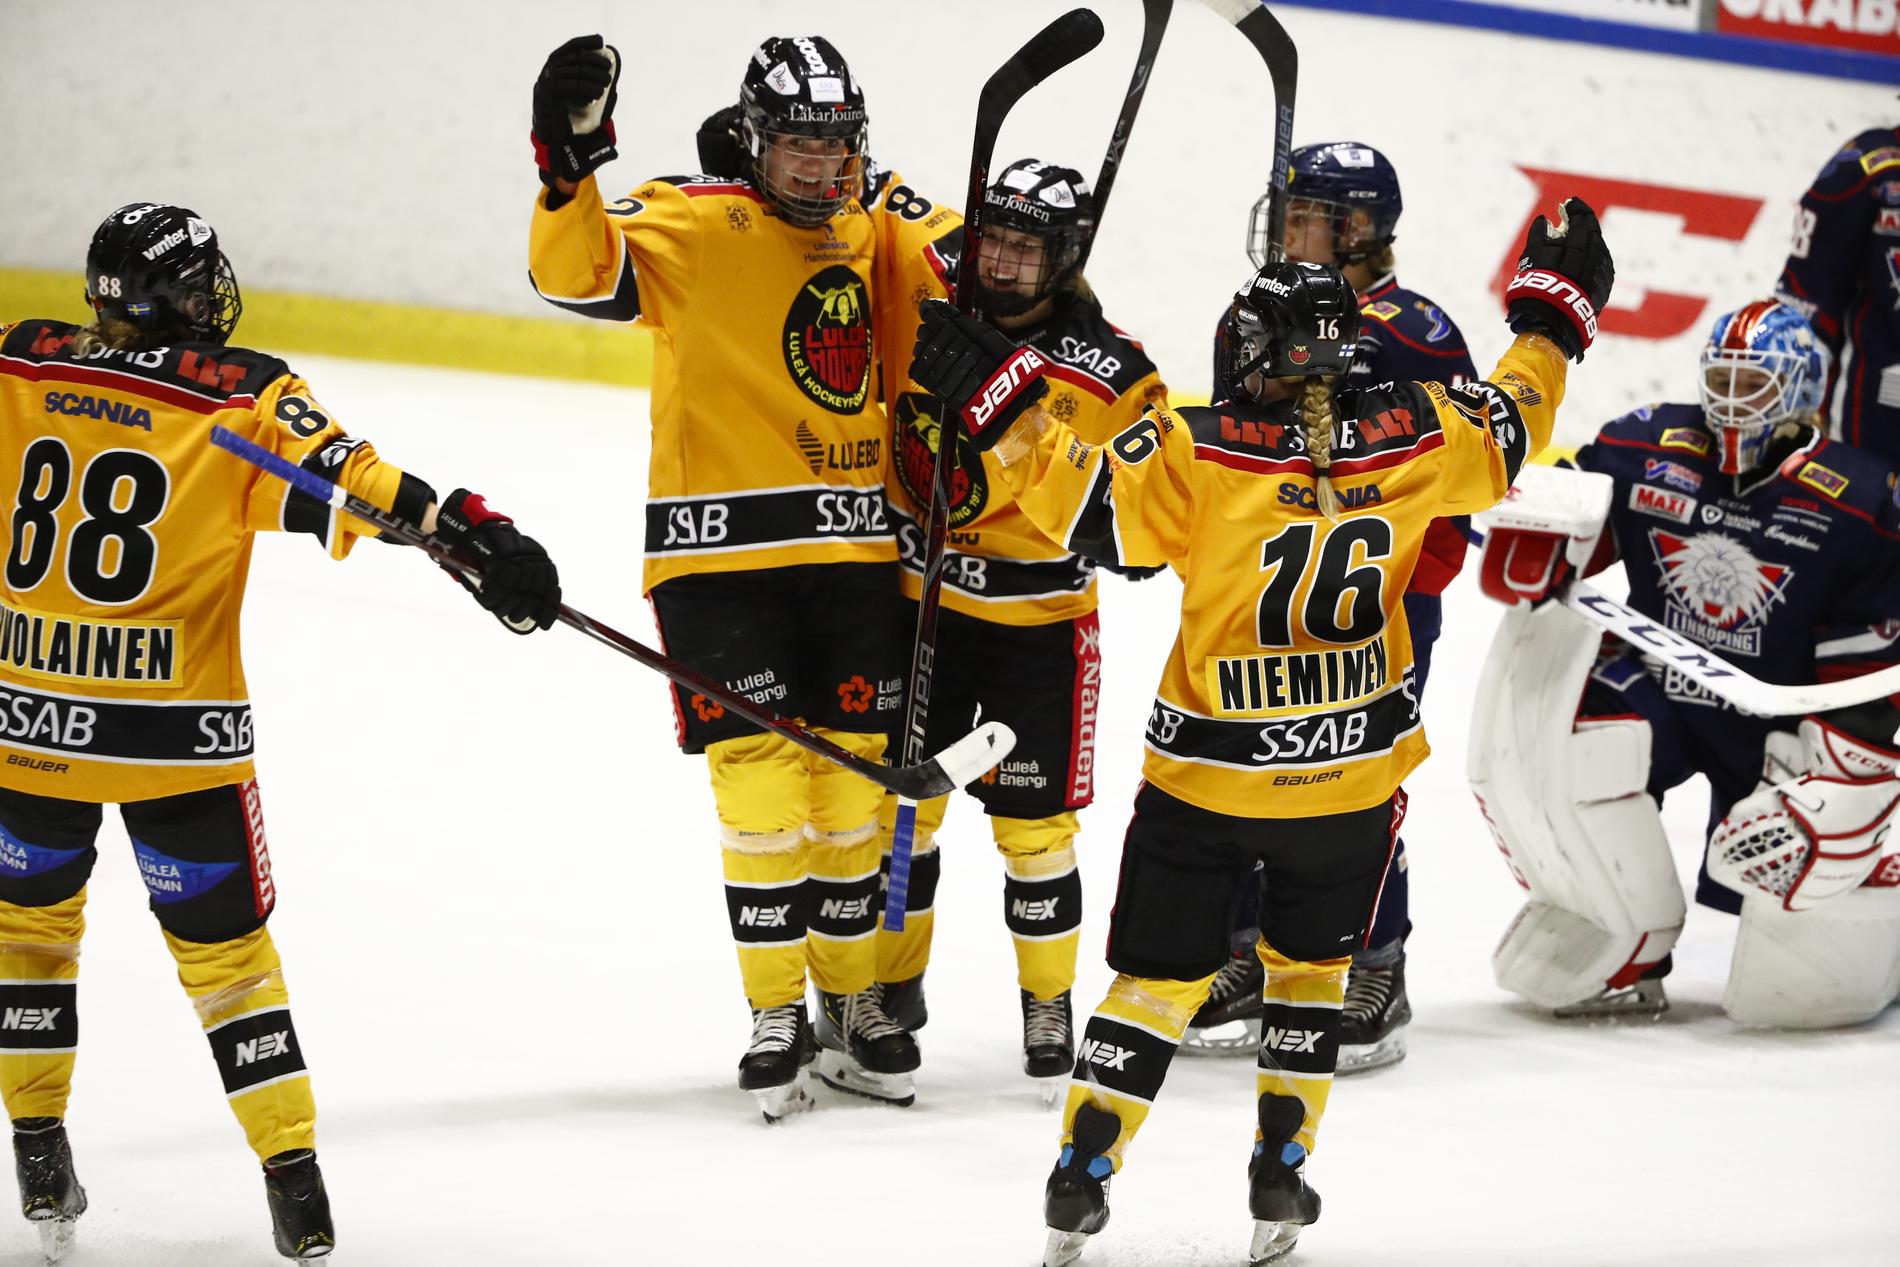 Luleås Nathalie Ferno (C) jublar efter 0-2-målet under fredagens ishockeymatch i SDHL mellan Linköping HC och Luleå HF på Stångebro ishall.